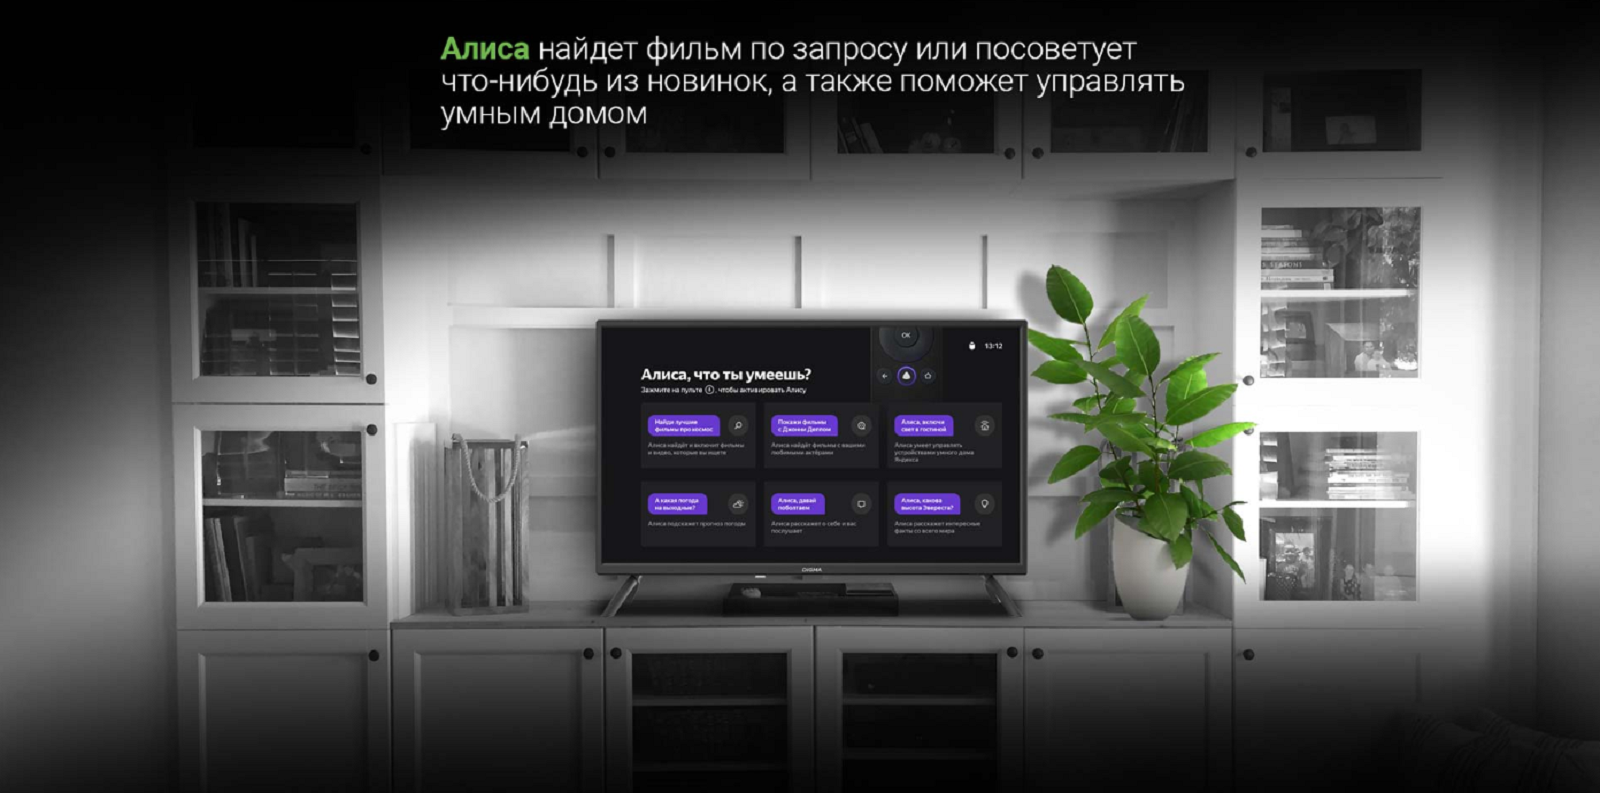 Яндекс ТВ с голосовым помощником Алиса